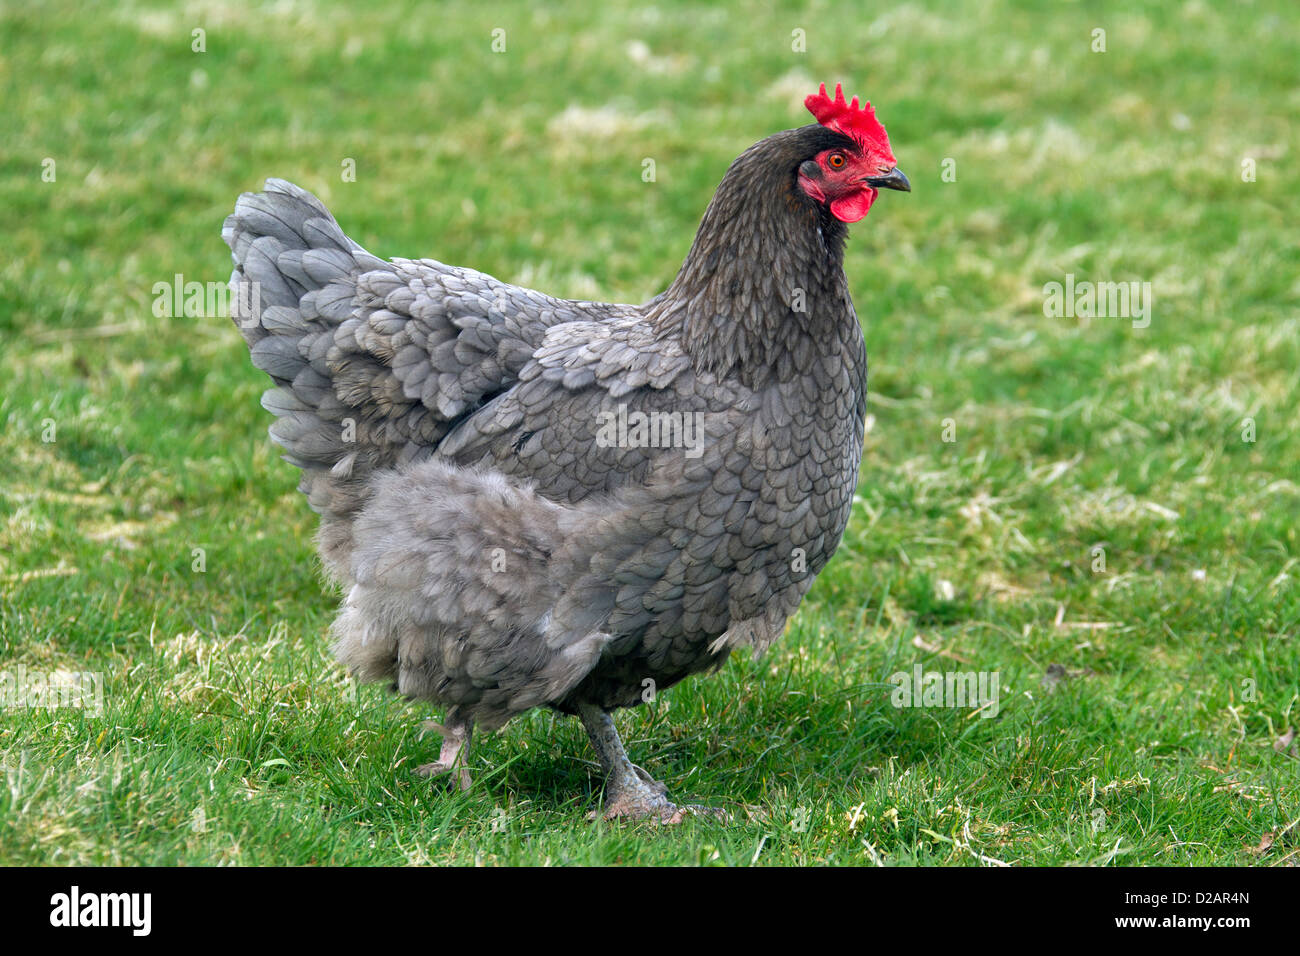 Gallina (Gallus gallus domesticus) retrato de gallina en la granja avícola Foto de stock